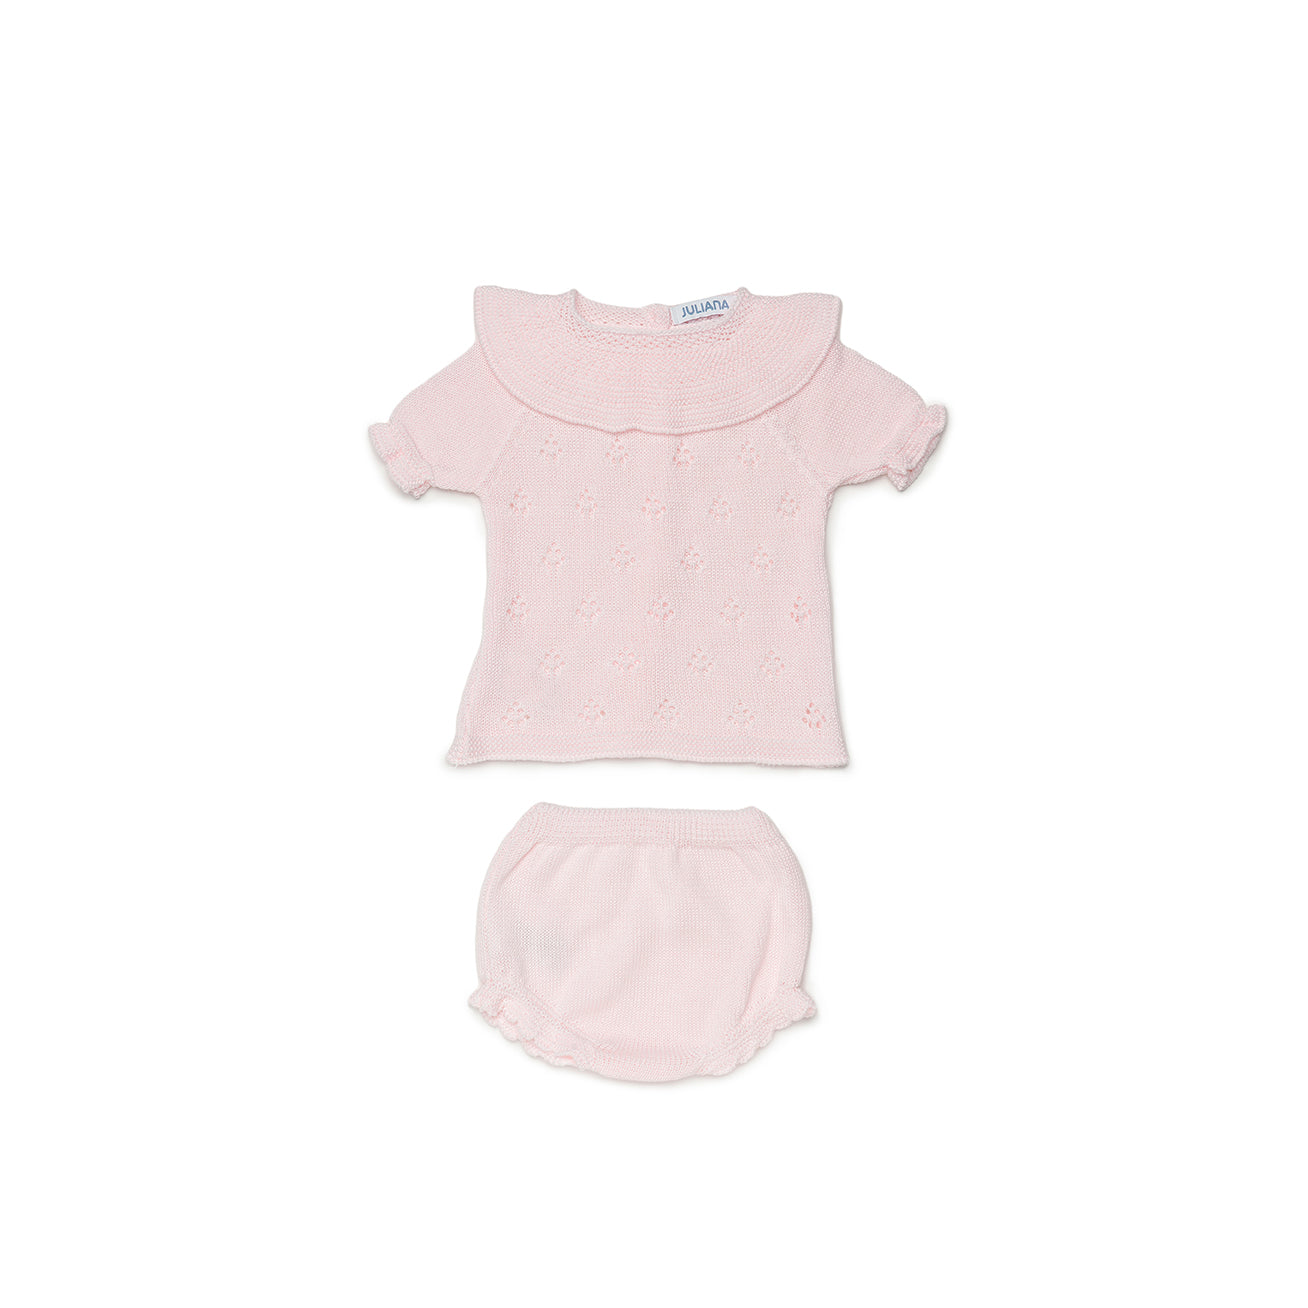 JULIANA Moraig Girls Pink Knitted Jam Pant Set - 24065